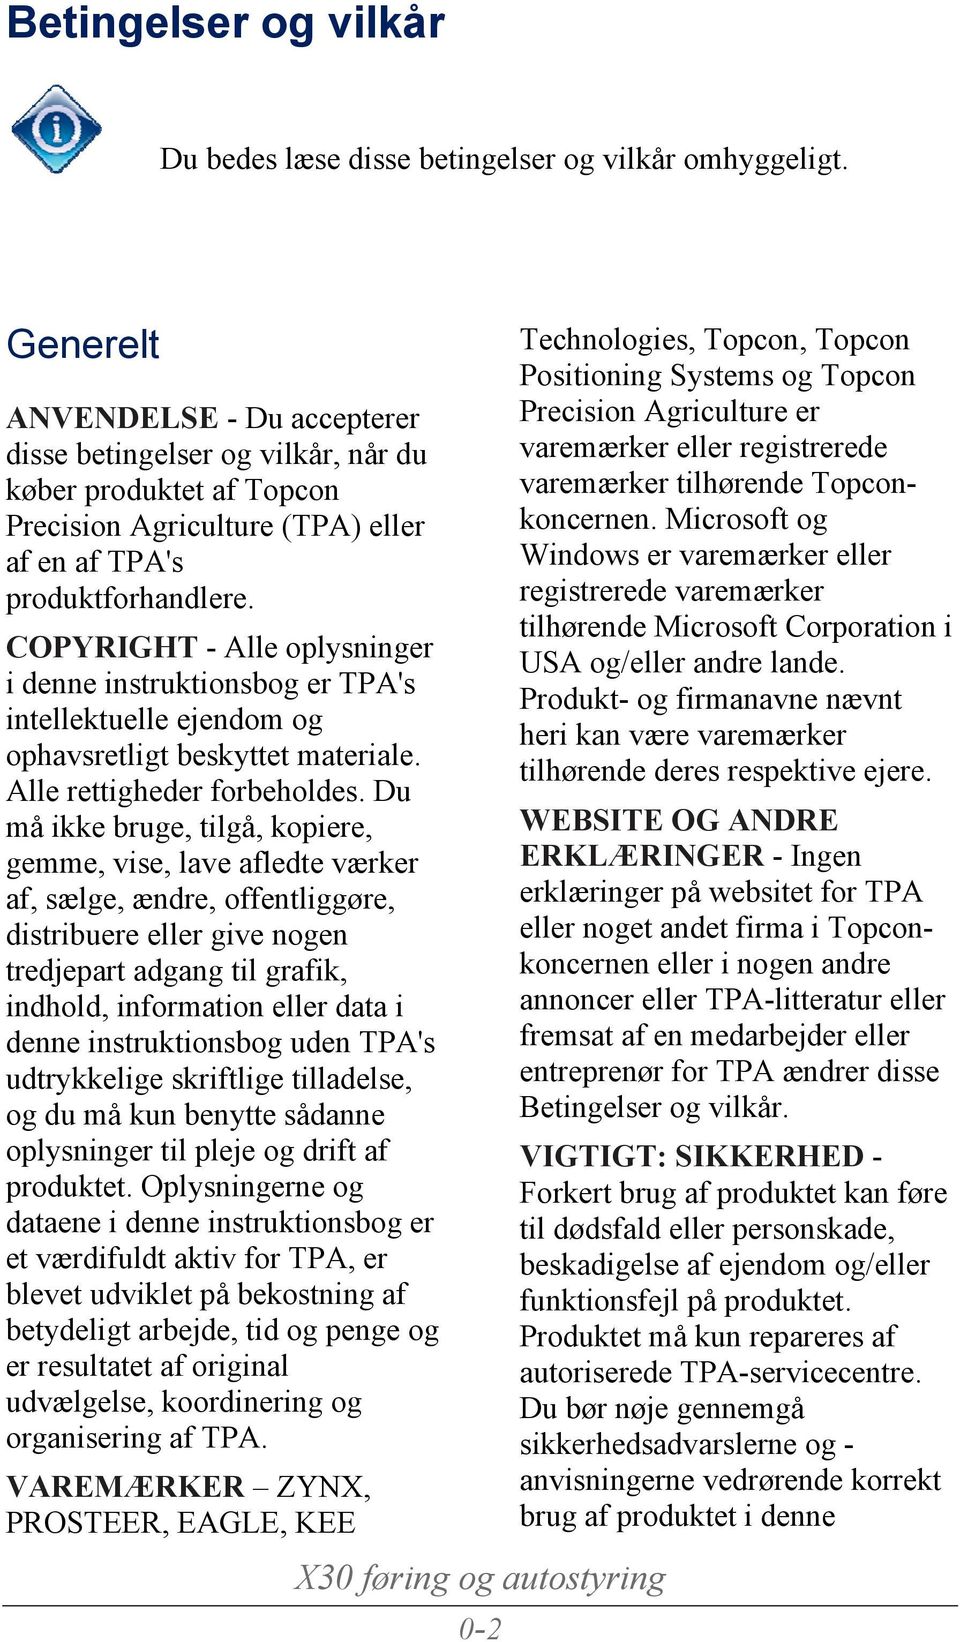 COPYRIGHT - Alle oplysninger i denne instruktionsbog er TPA's intellektuelle ejendom og ophavsretligt beskyttet materiale. Alle rettigheder forbeholdes.